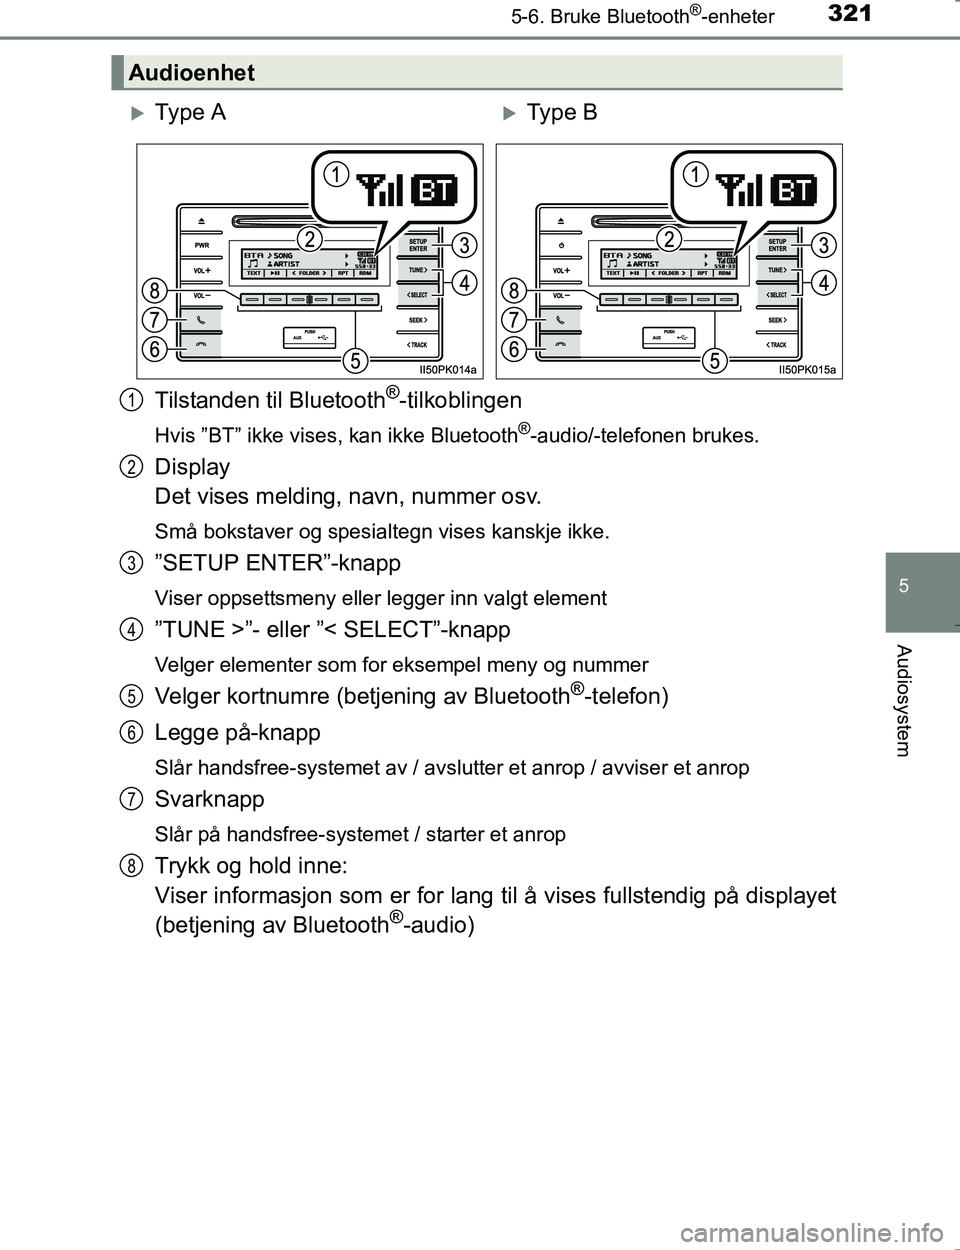 TOYOTA HILUX 2016  Instruksjoner for bruk (in Norwegian) 3215-6. Bruke Bluetooth®-enheter
5
Audiosystem
OM0K196E
Tilstanden til Bluetooth®-tilkoblingen
Hvis ”BT” ikke vises, kan ikke Bluetooth®-audio/-telefonen brukes.
Display 
Det vises melding, nav